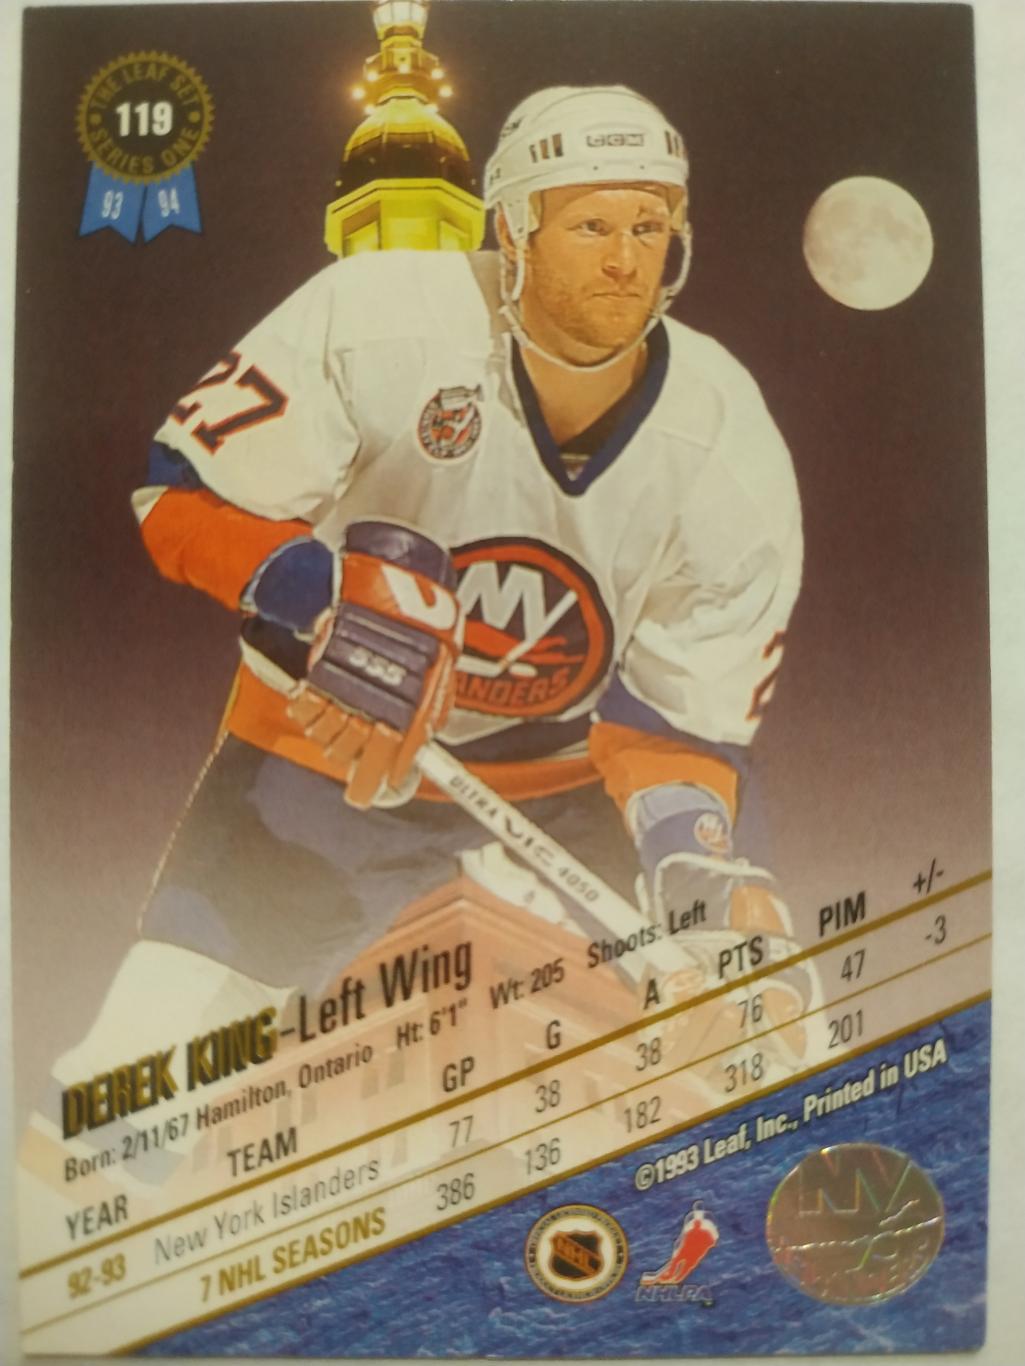 ХОККЕЙ КАРТОЧКА НХЛ LEAF SET SERIES ONE 1993-94 DEREK KING ISLANDERS #119 1